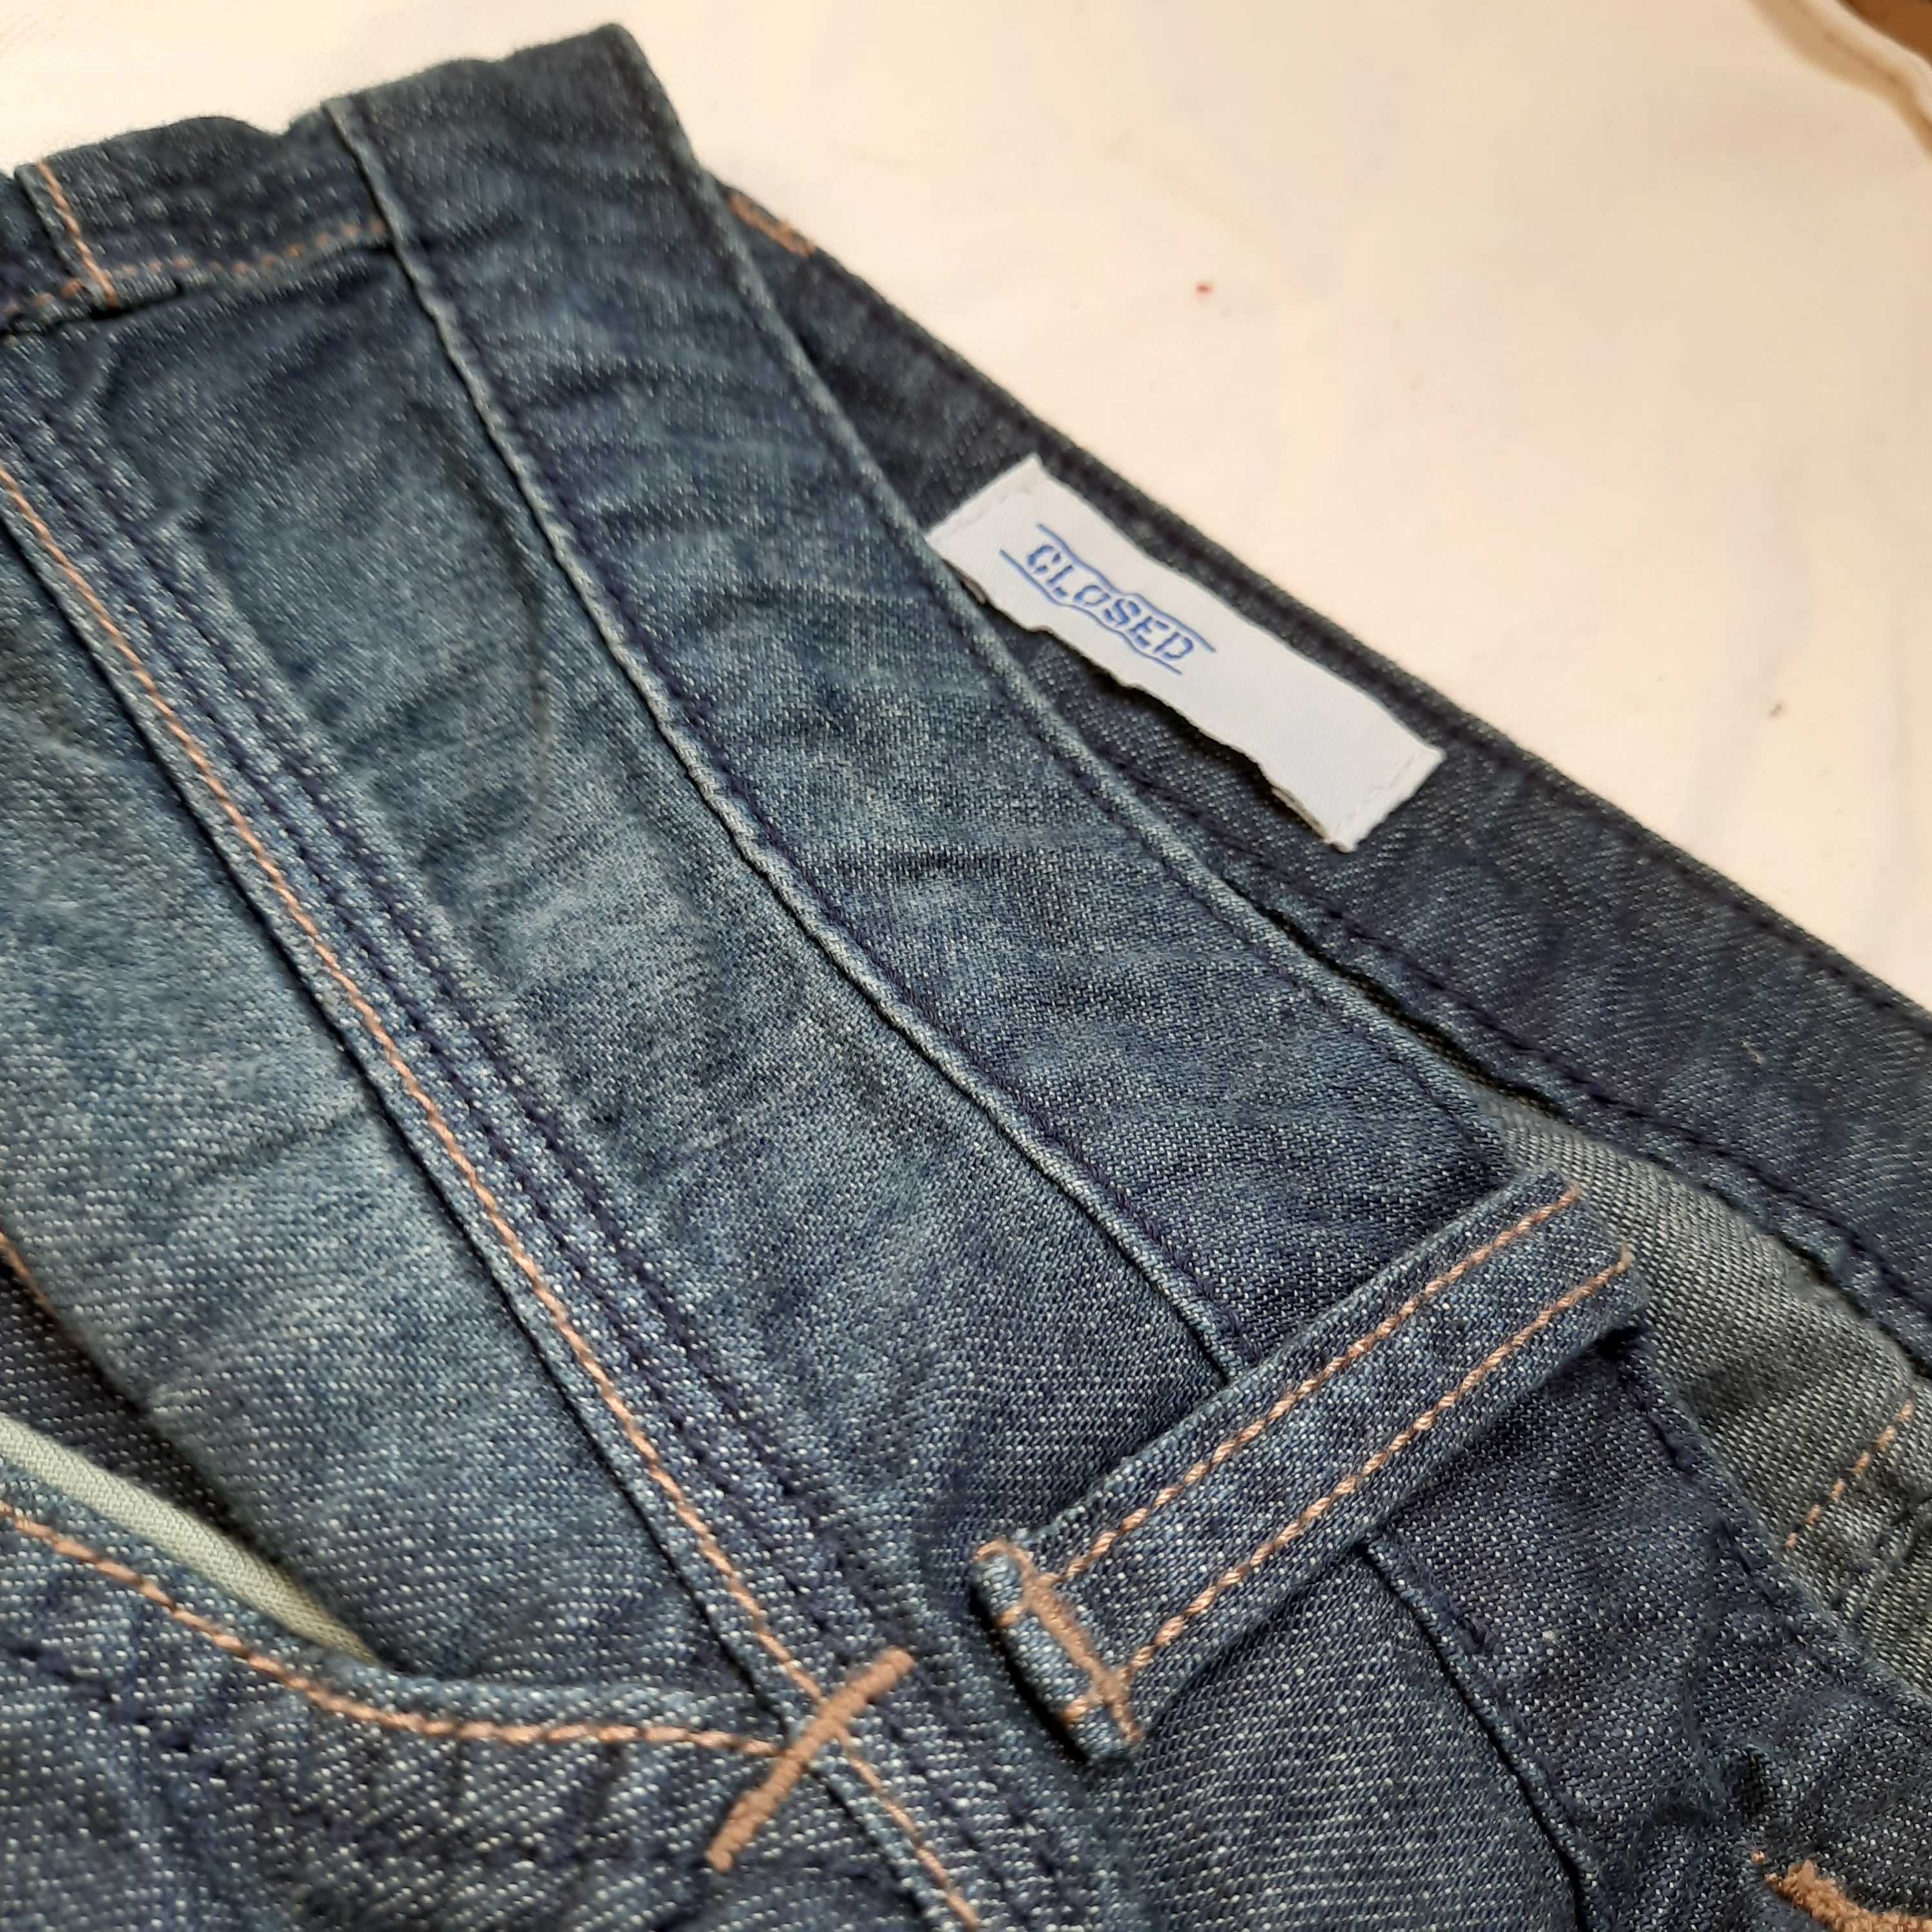 Closed nowe spodnie jeansowe damskie 48 L XL